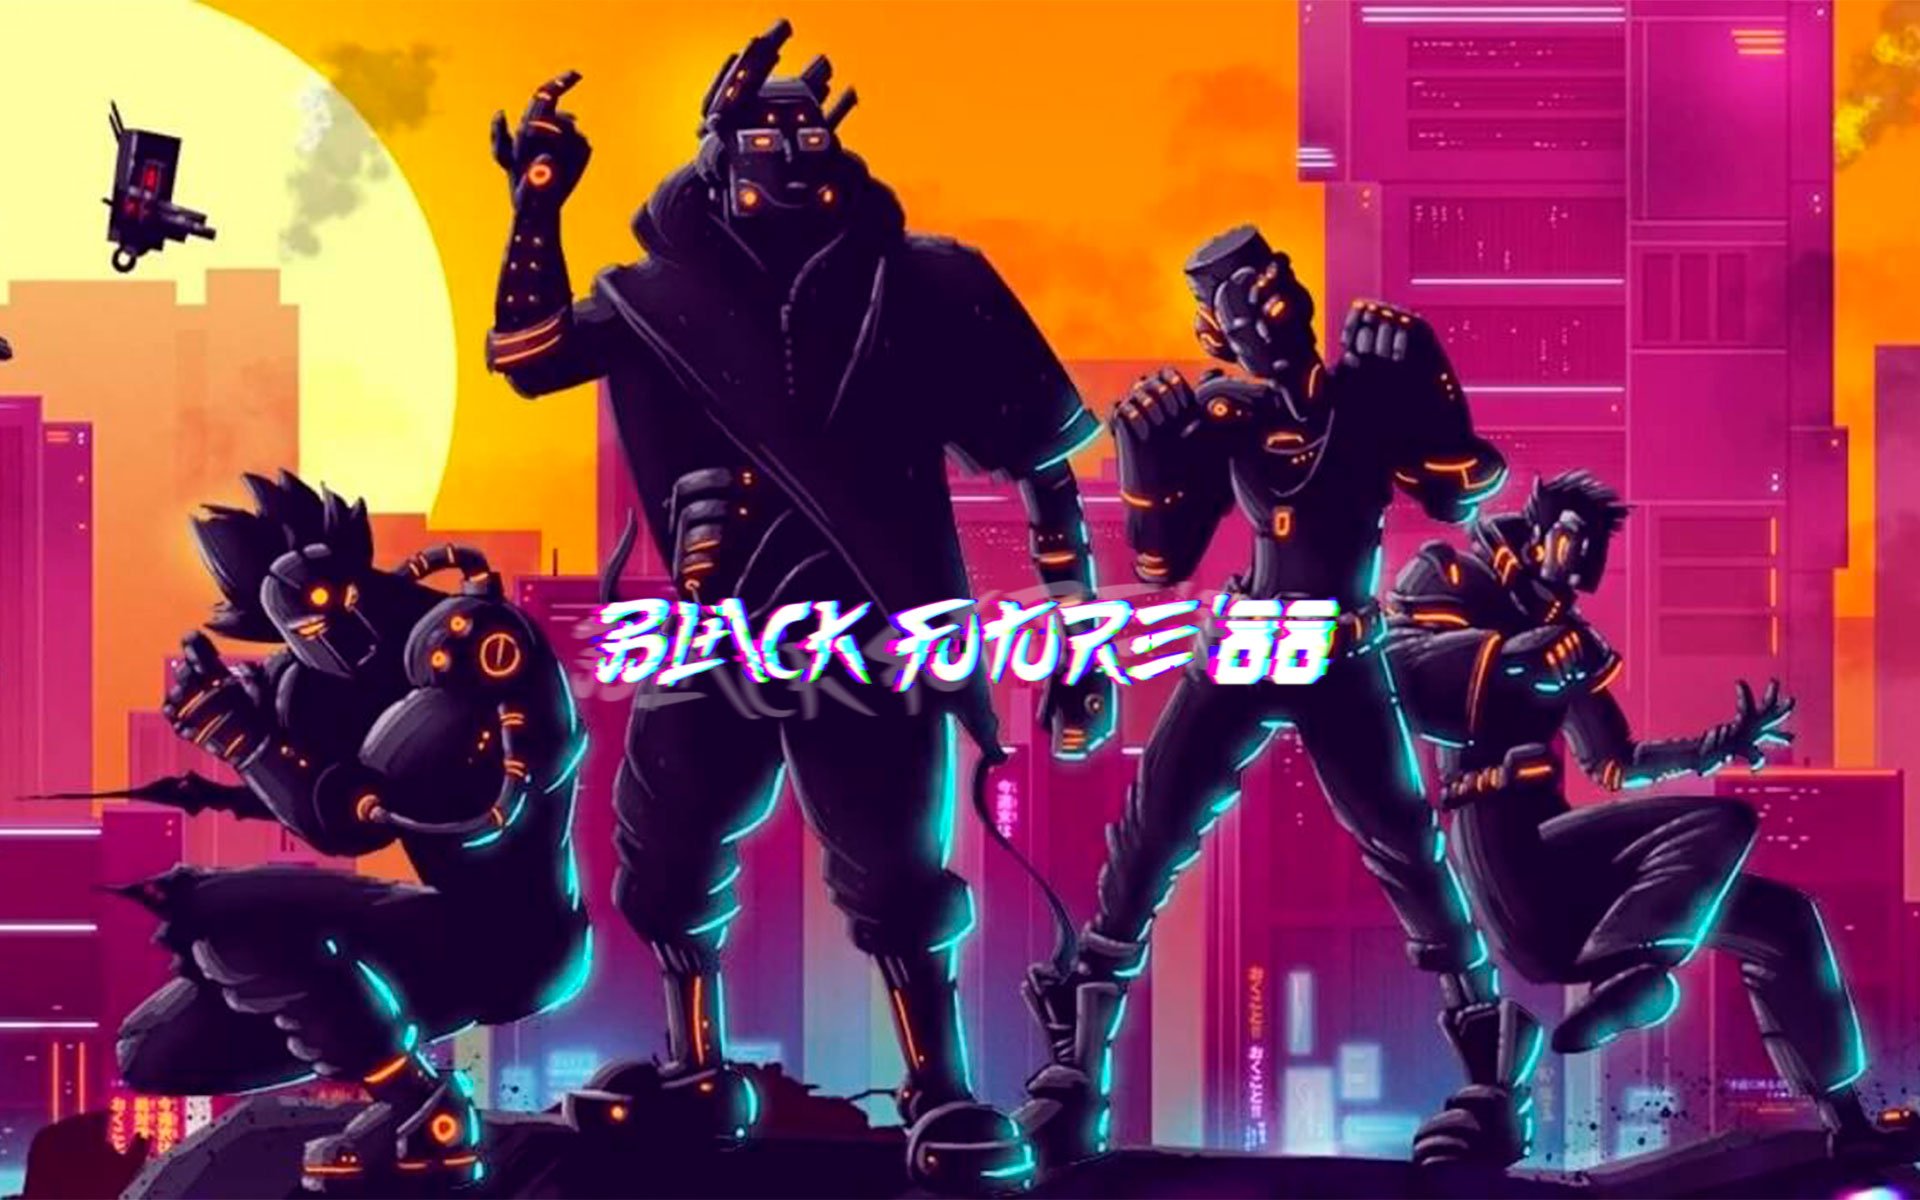 Compre Black Future '88 a partir de R$ 37.99